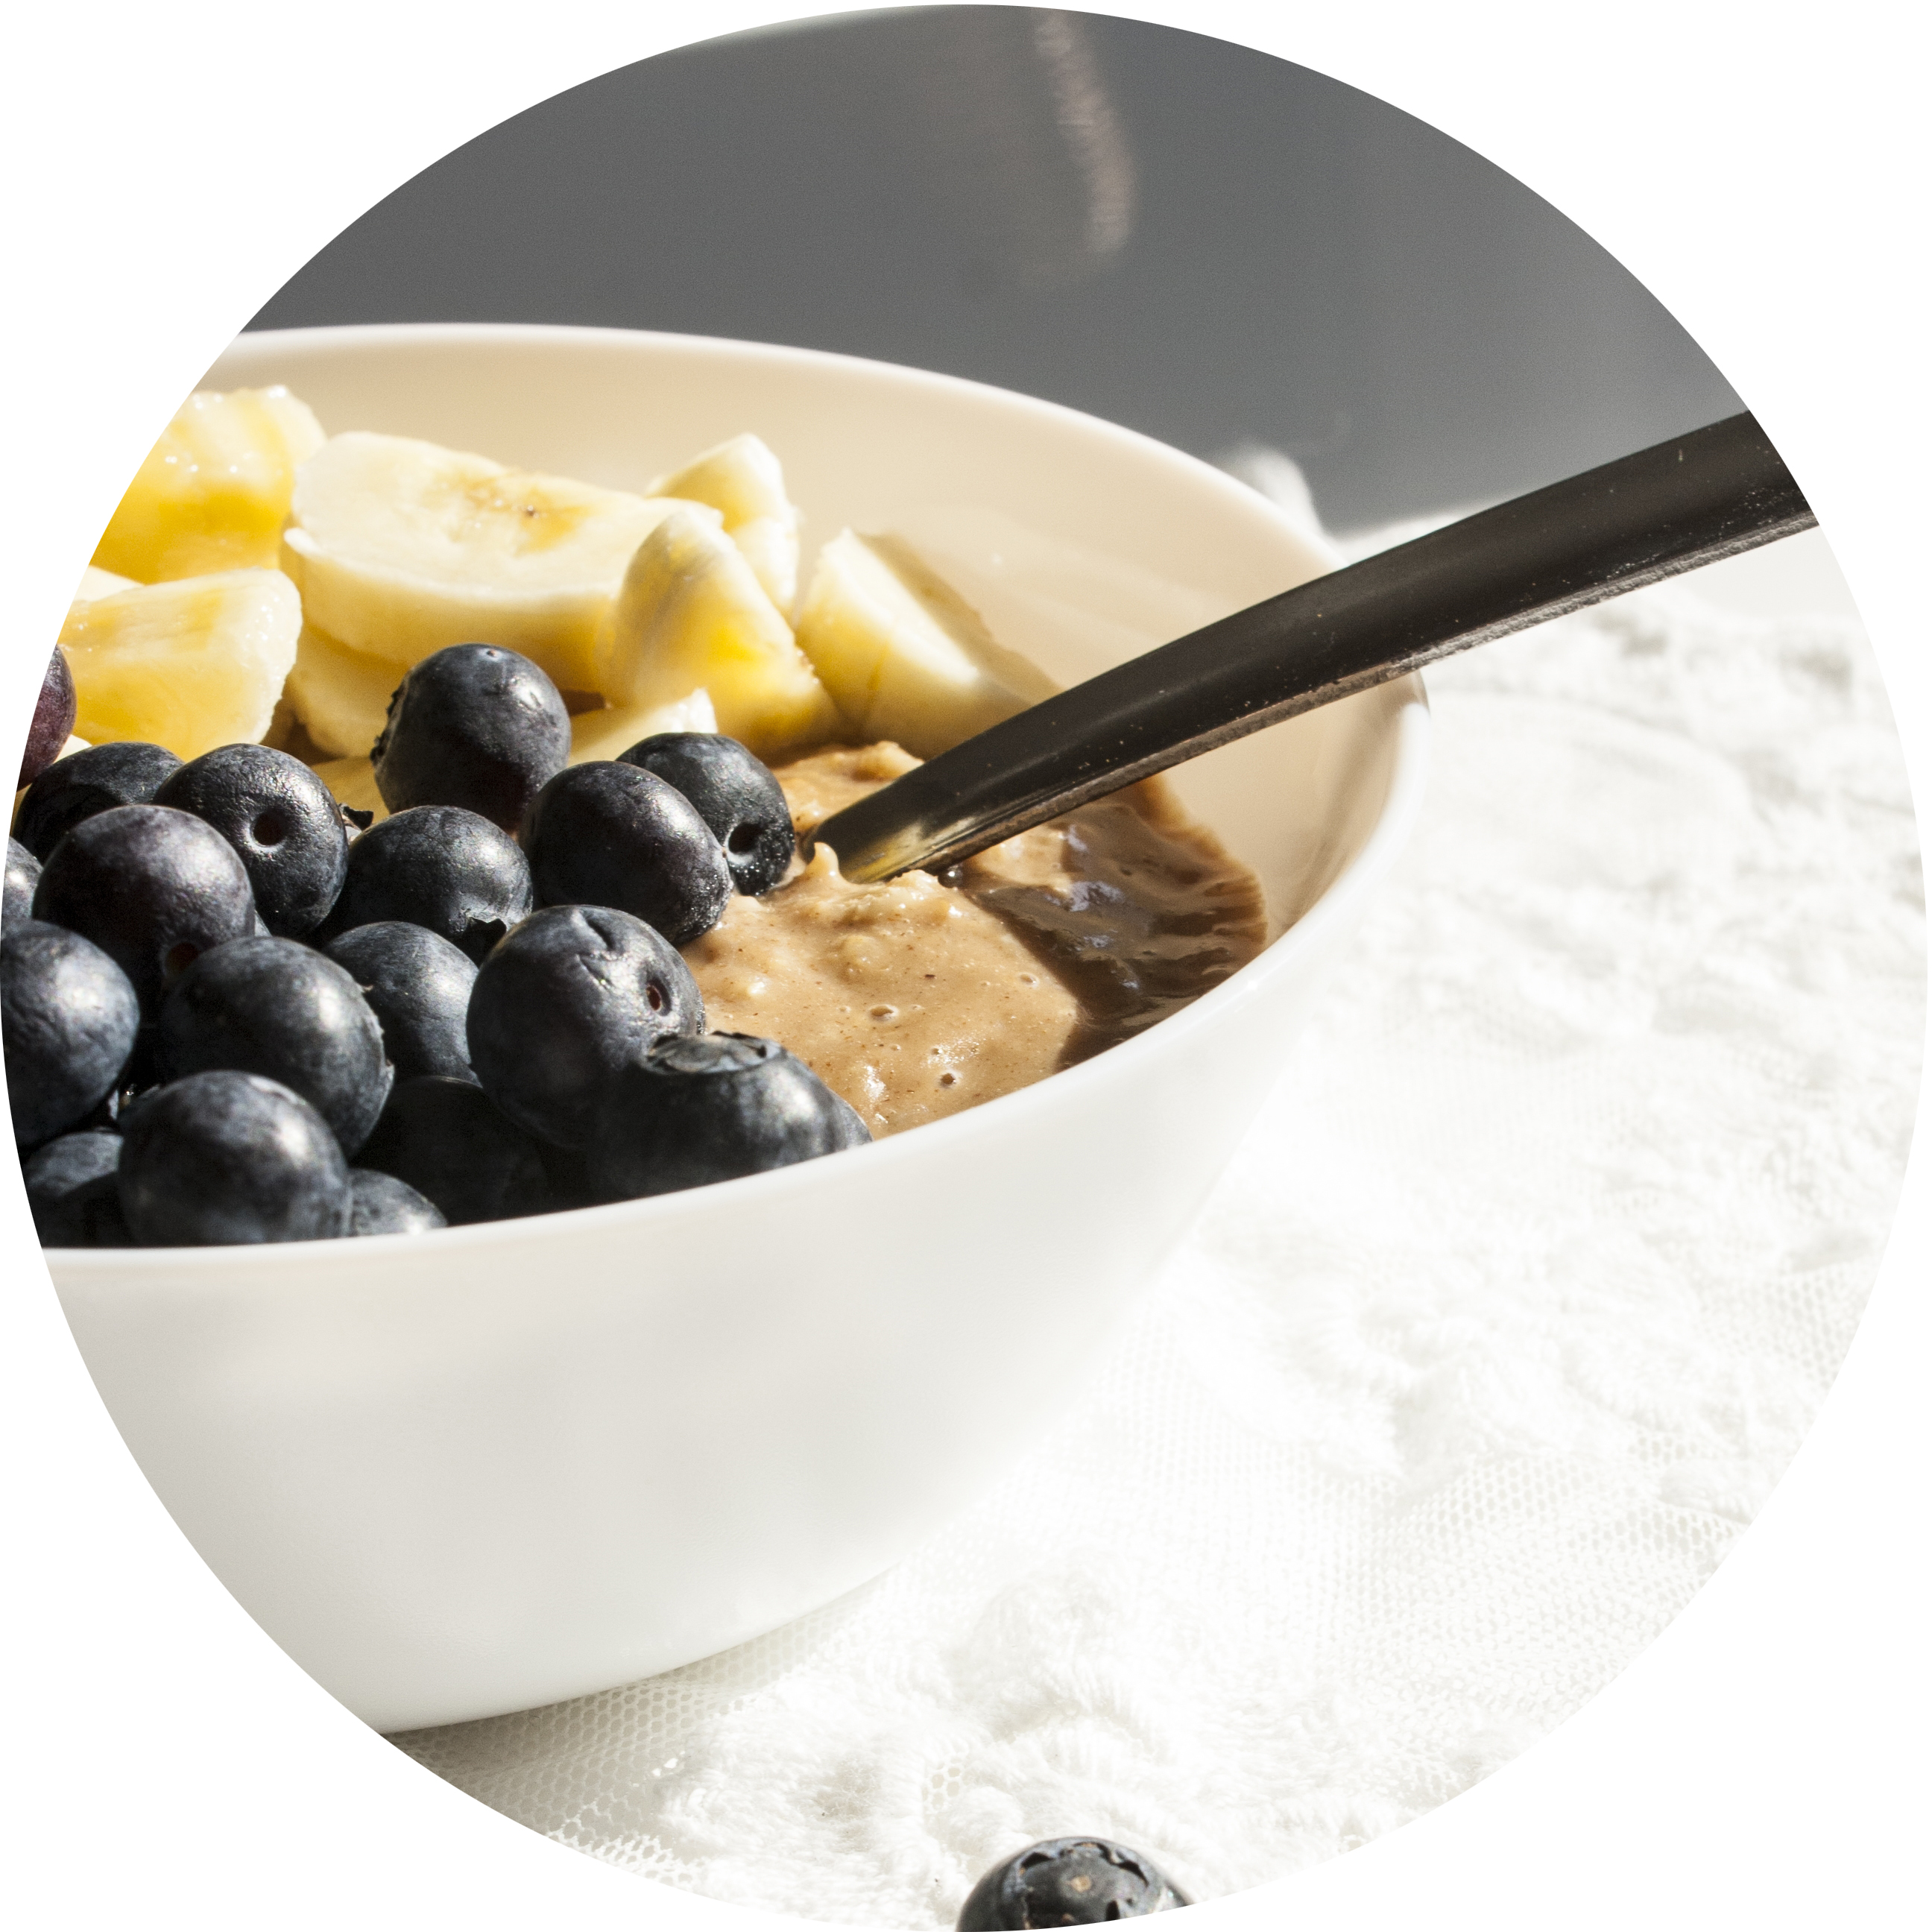 Wachmacher-Porridge mit Mandelmus und frischem Obst | Zuckergewitter.de